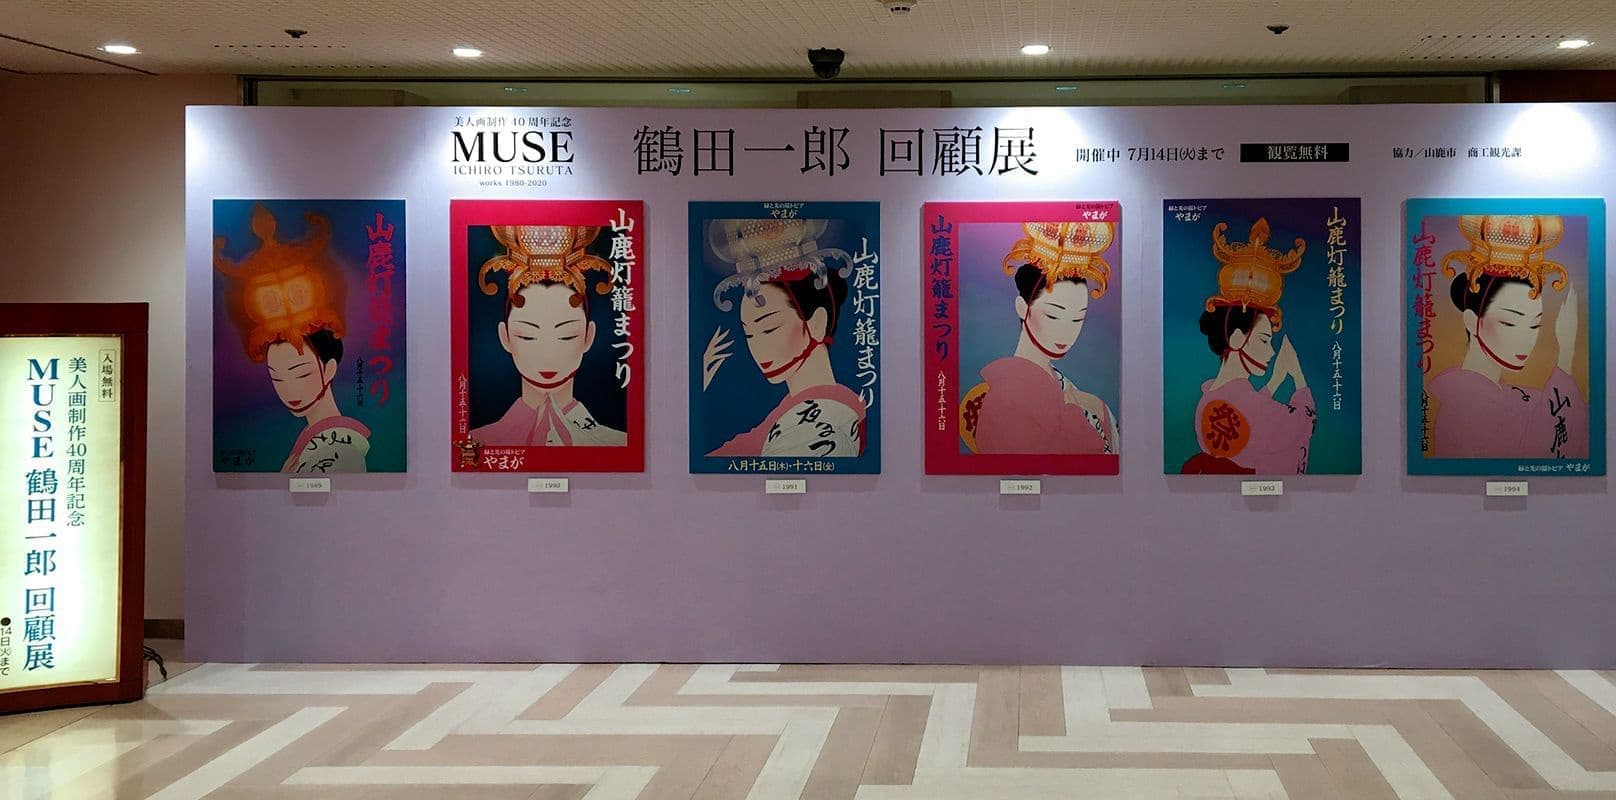 鶴田一郎回顧展 ―美人画40周年記念 MUSE―